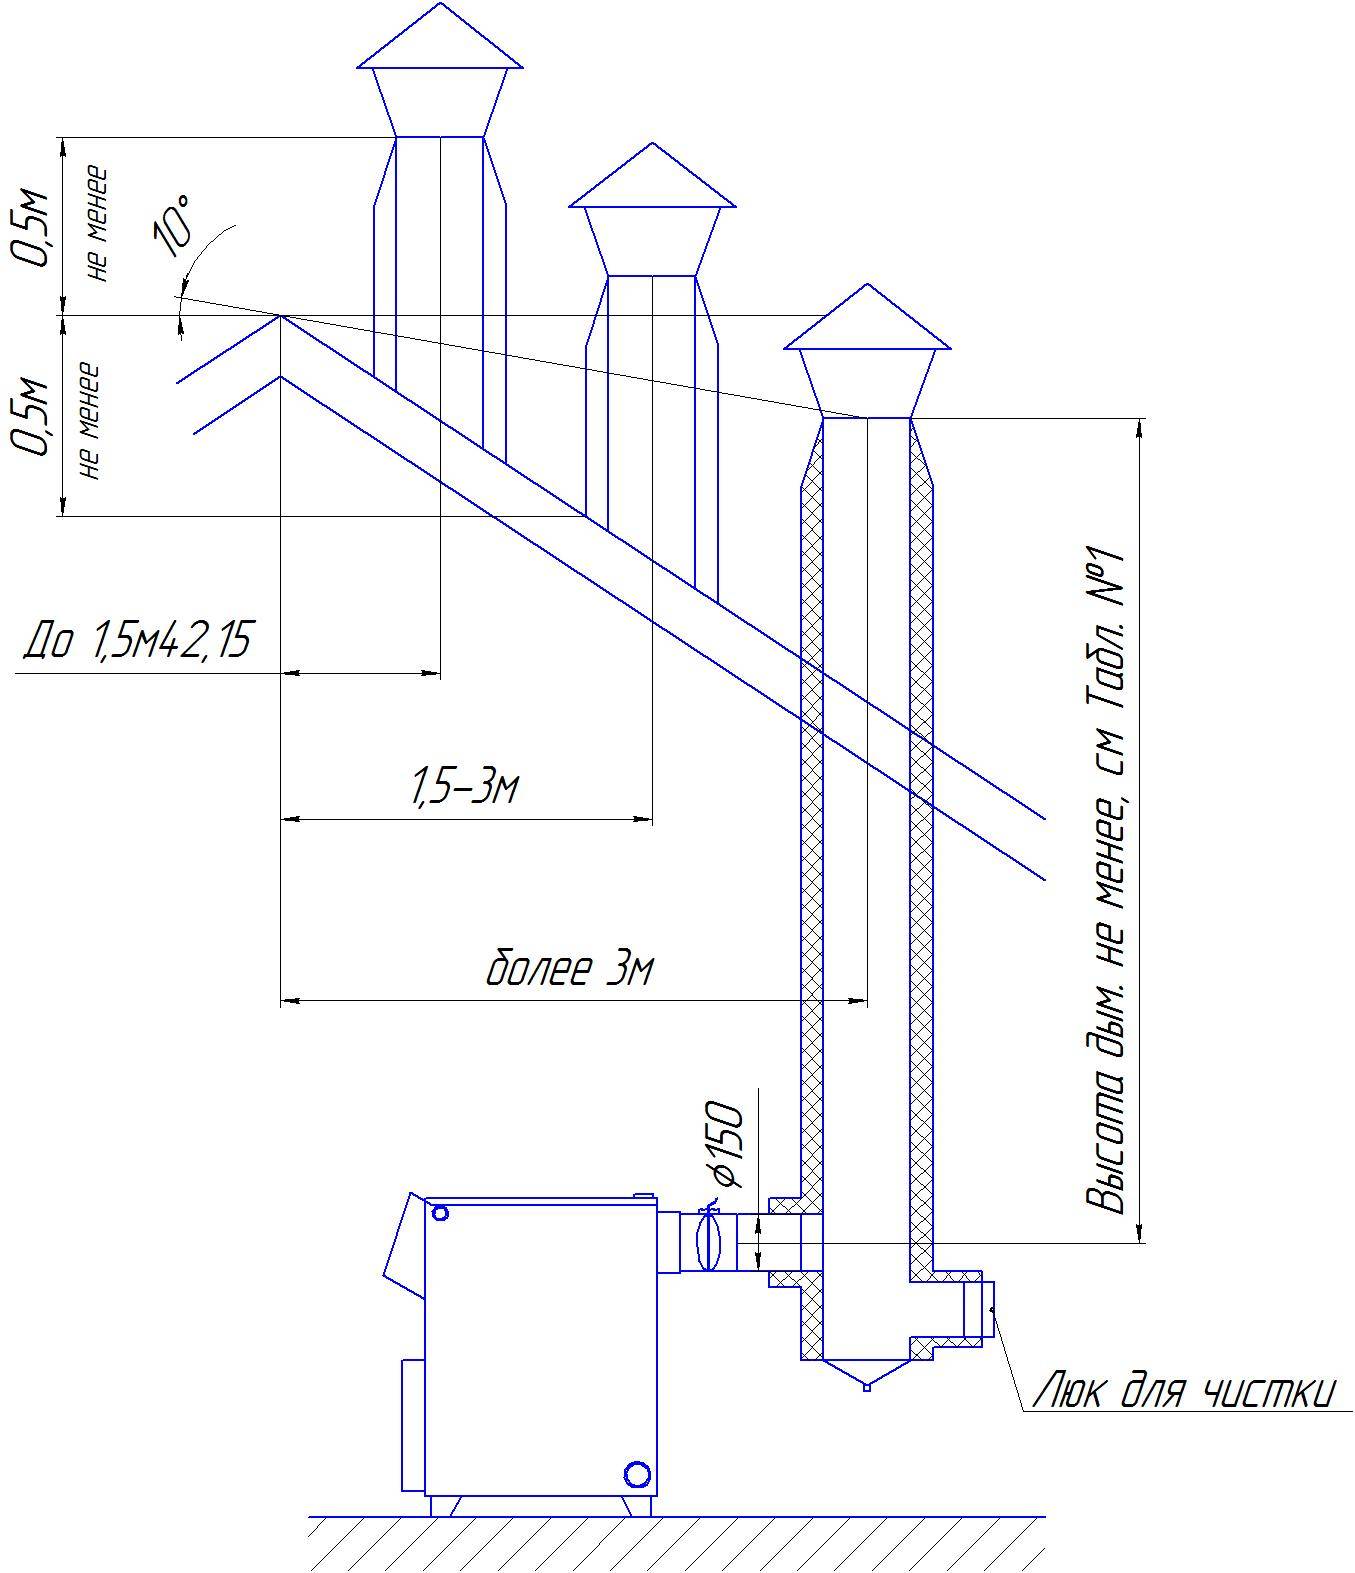 Типы и расчет параметров для дымовых труб